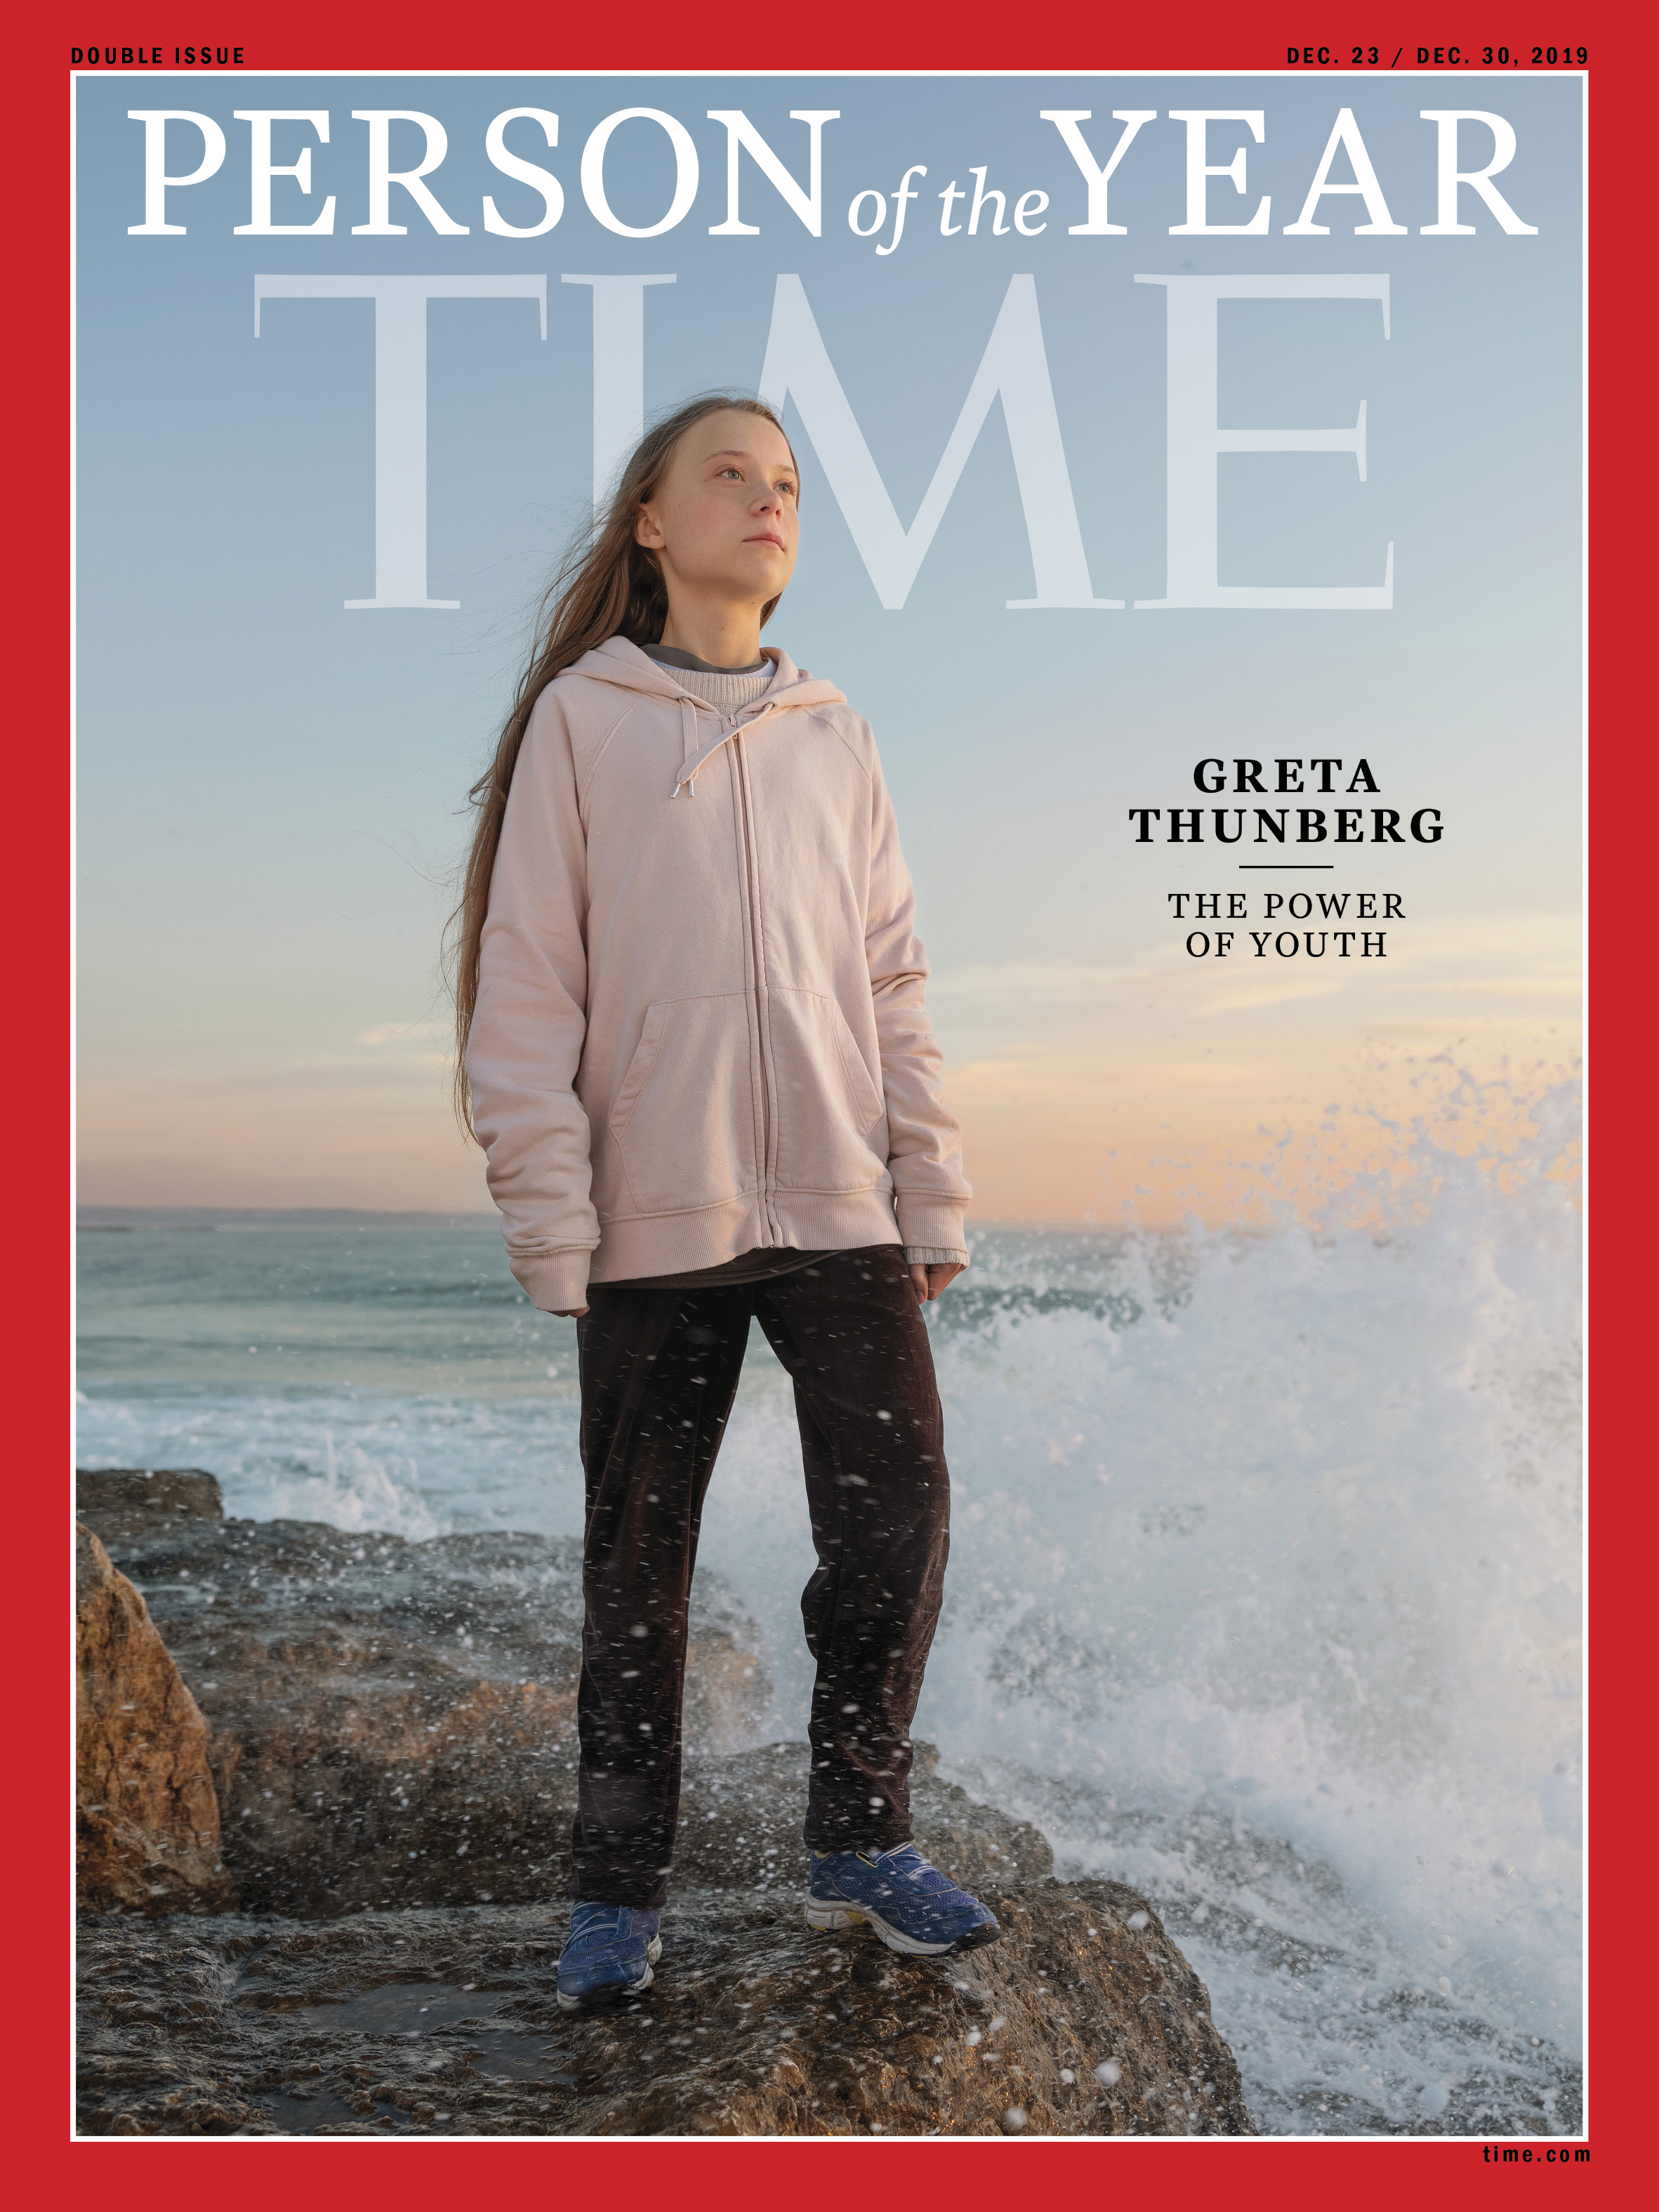 "قوة الشباب".. "التايم" الأمريكية تختار الناشطة السويدية "جريتا ثانبيرج" شخصية العام